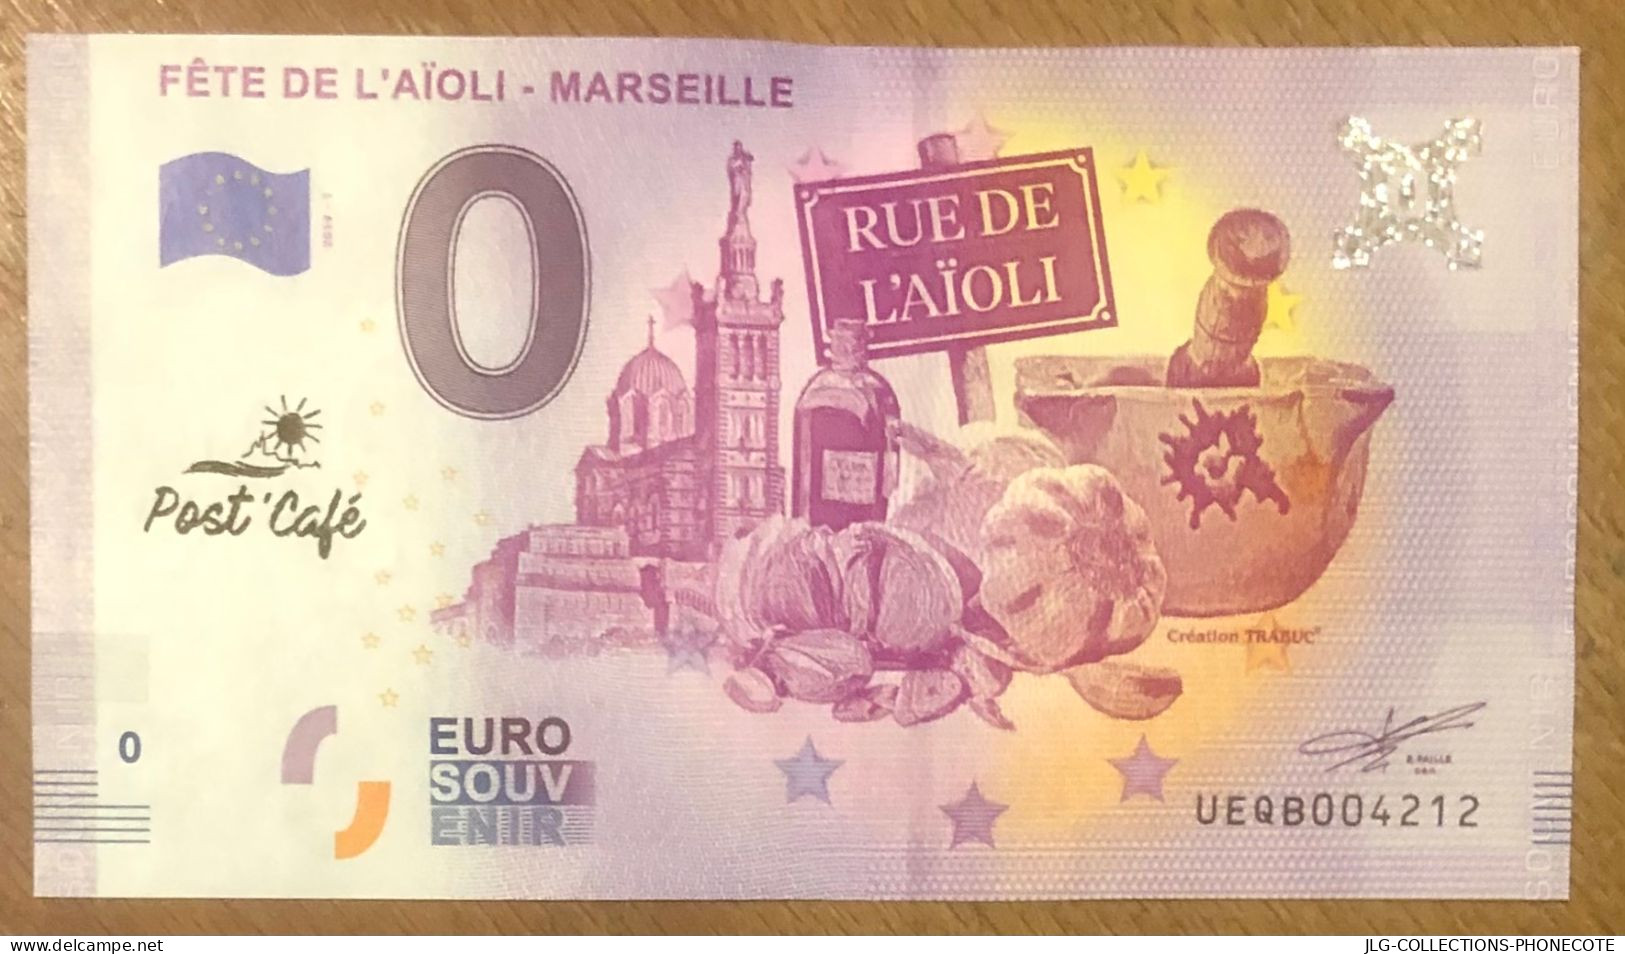 2019 MARSEILLE FÊTE DE L'AÏOLI & TAMPON MASSILIA CAFÉ BILLET 0 EURO SOUVENIR 0 EURO SCHEIN BANKNOTE PAPER MONEY BILLETE - Essais Privés / Non-officiels